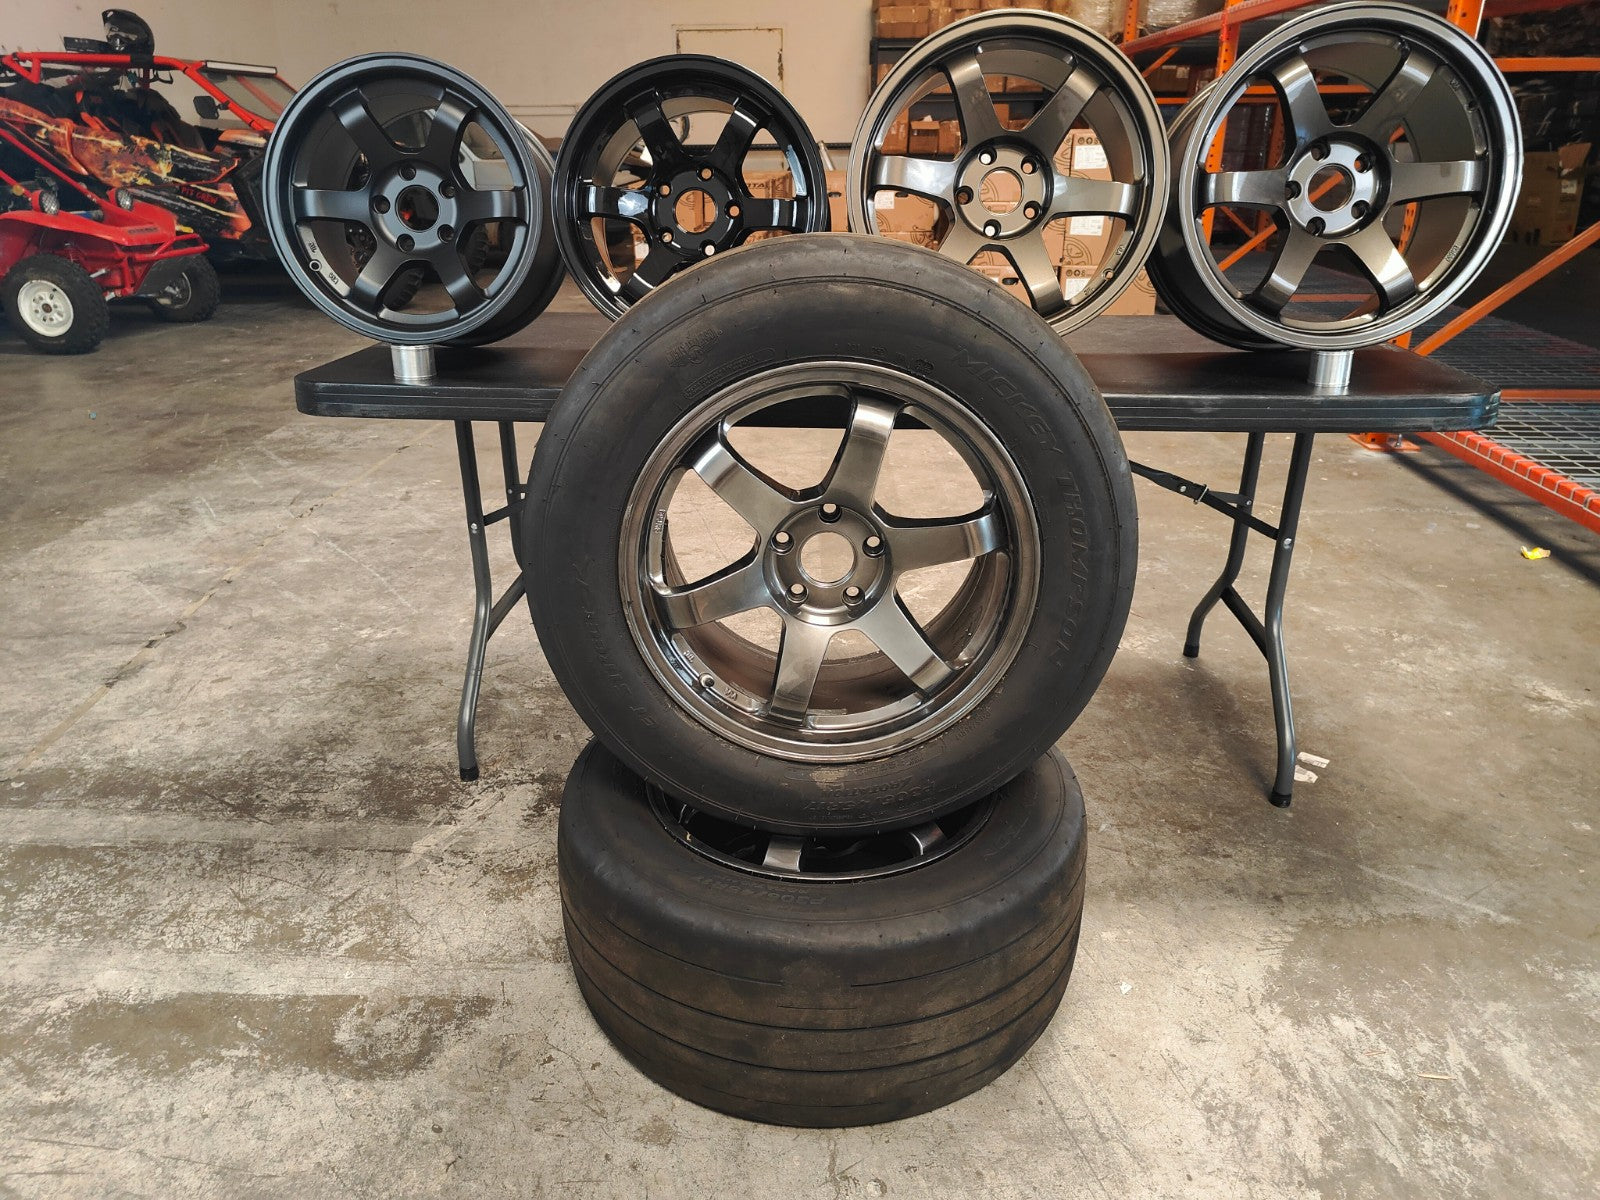 VTT 15″/17″ Drag Pack Wheels for BMW/Toyota/VAG